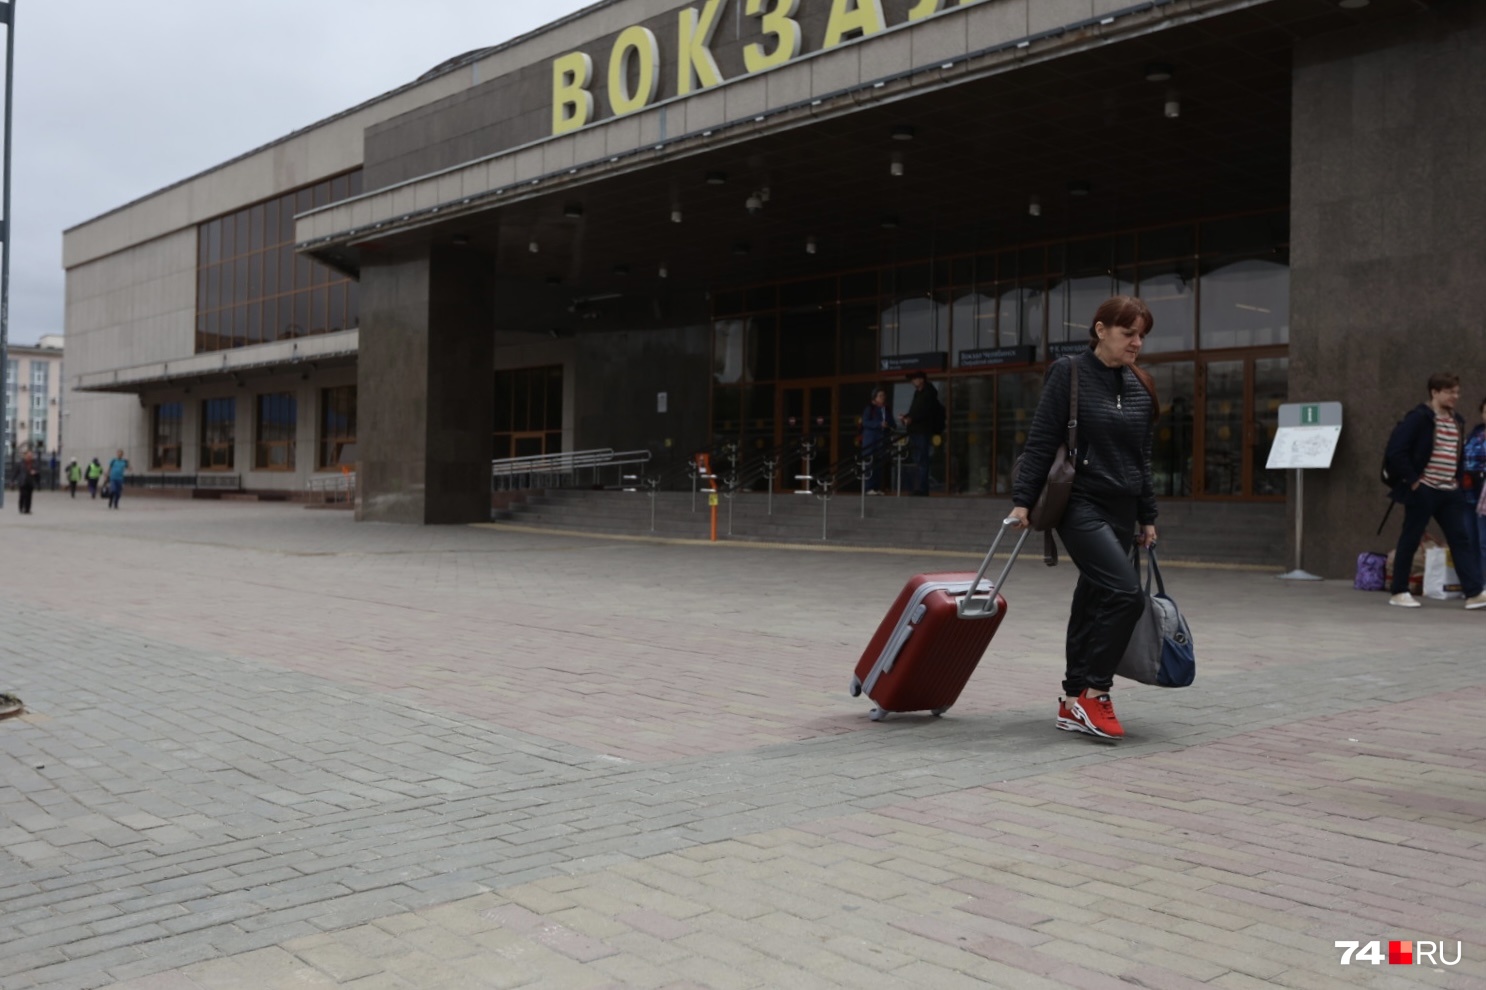 Сотни пассажиров прибывают на железнодорожный вокзал Челябинска ежедневно